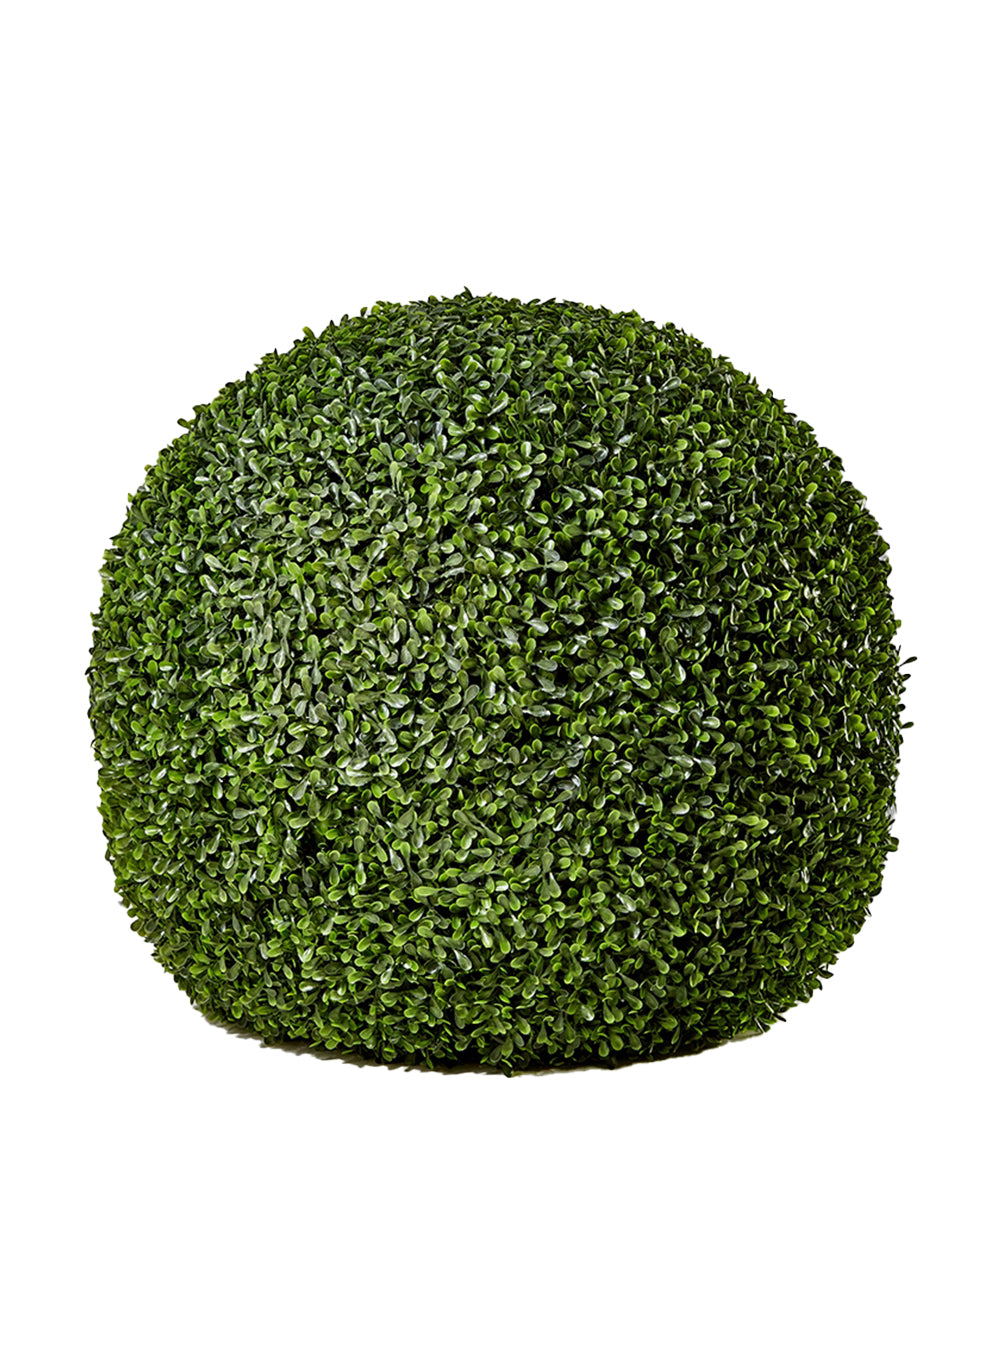 Boxwood Greenery Balls